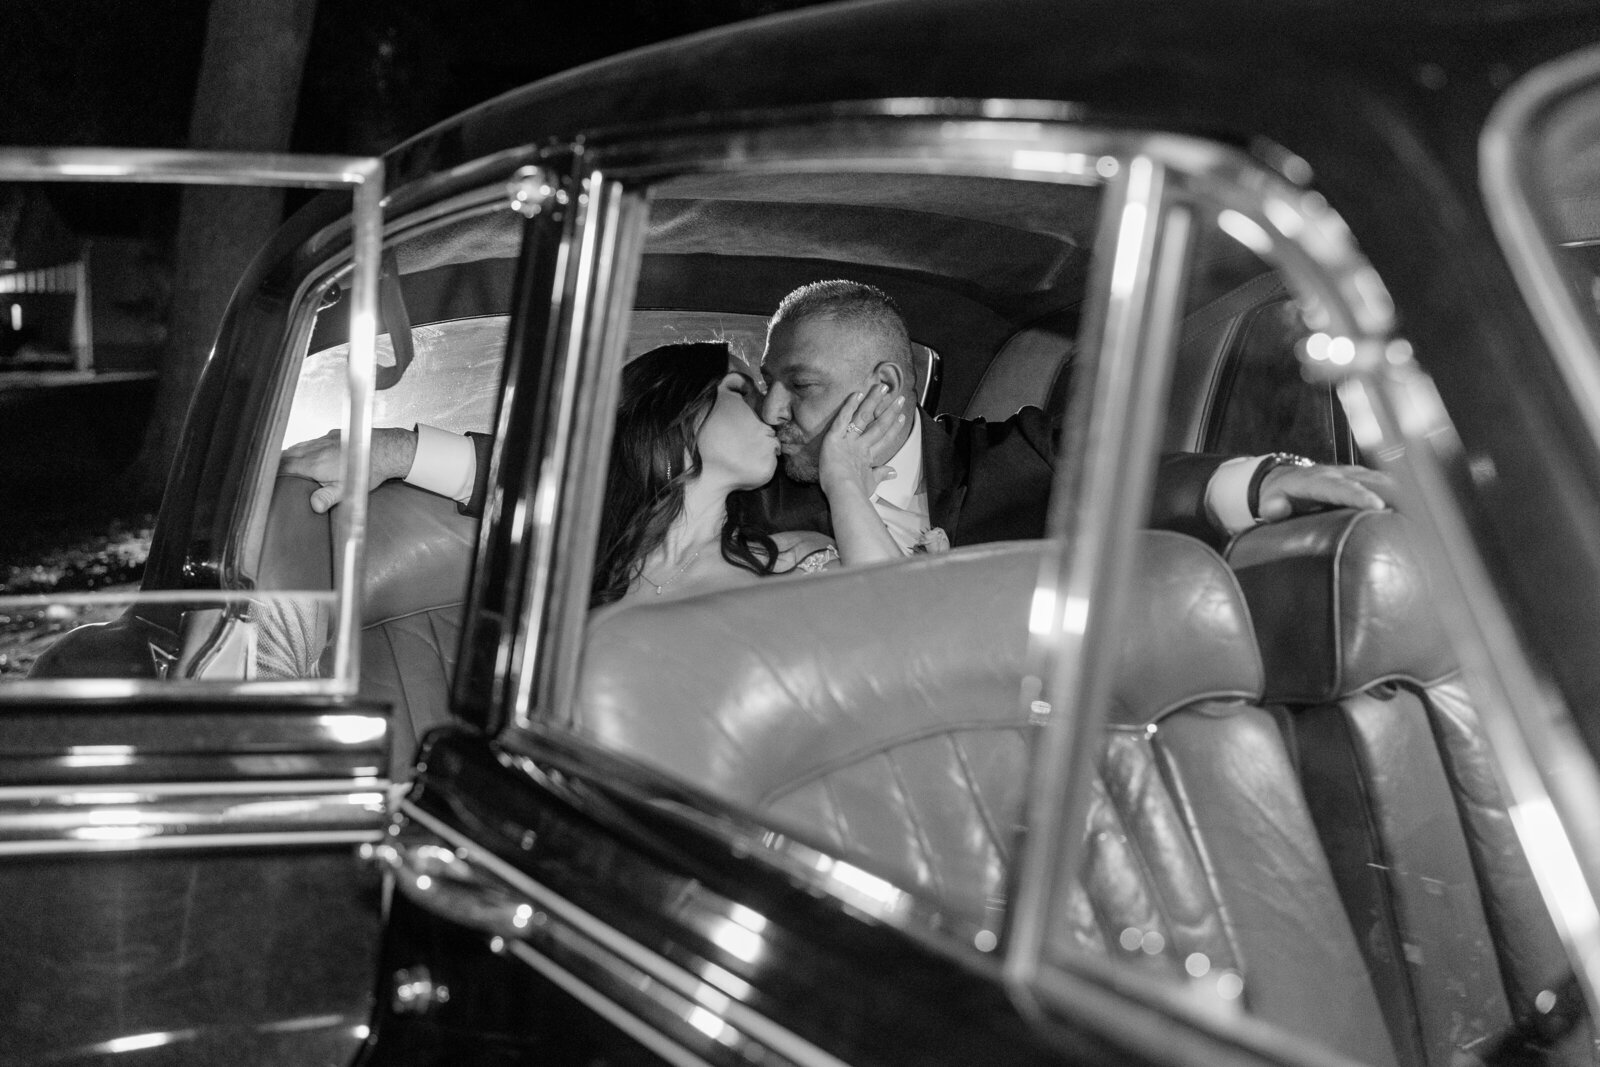 Rolls Royce wedding getaway car.